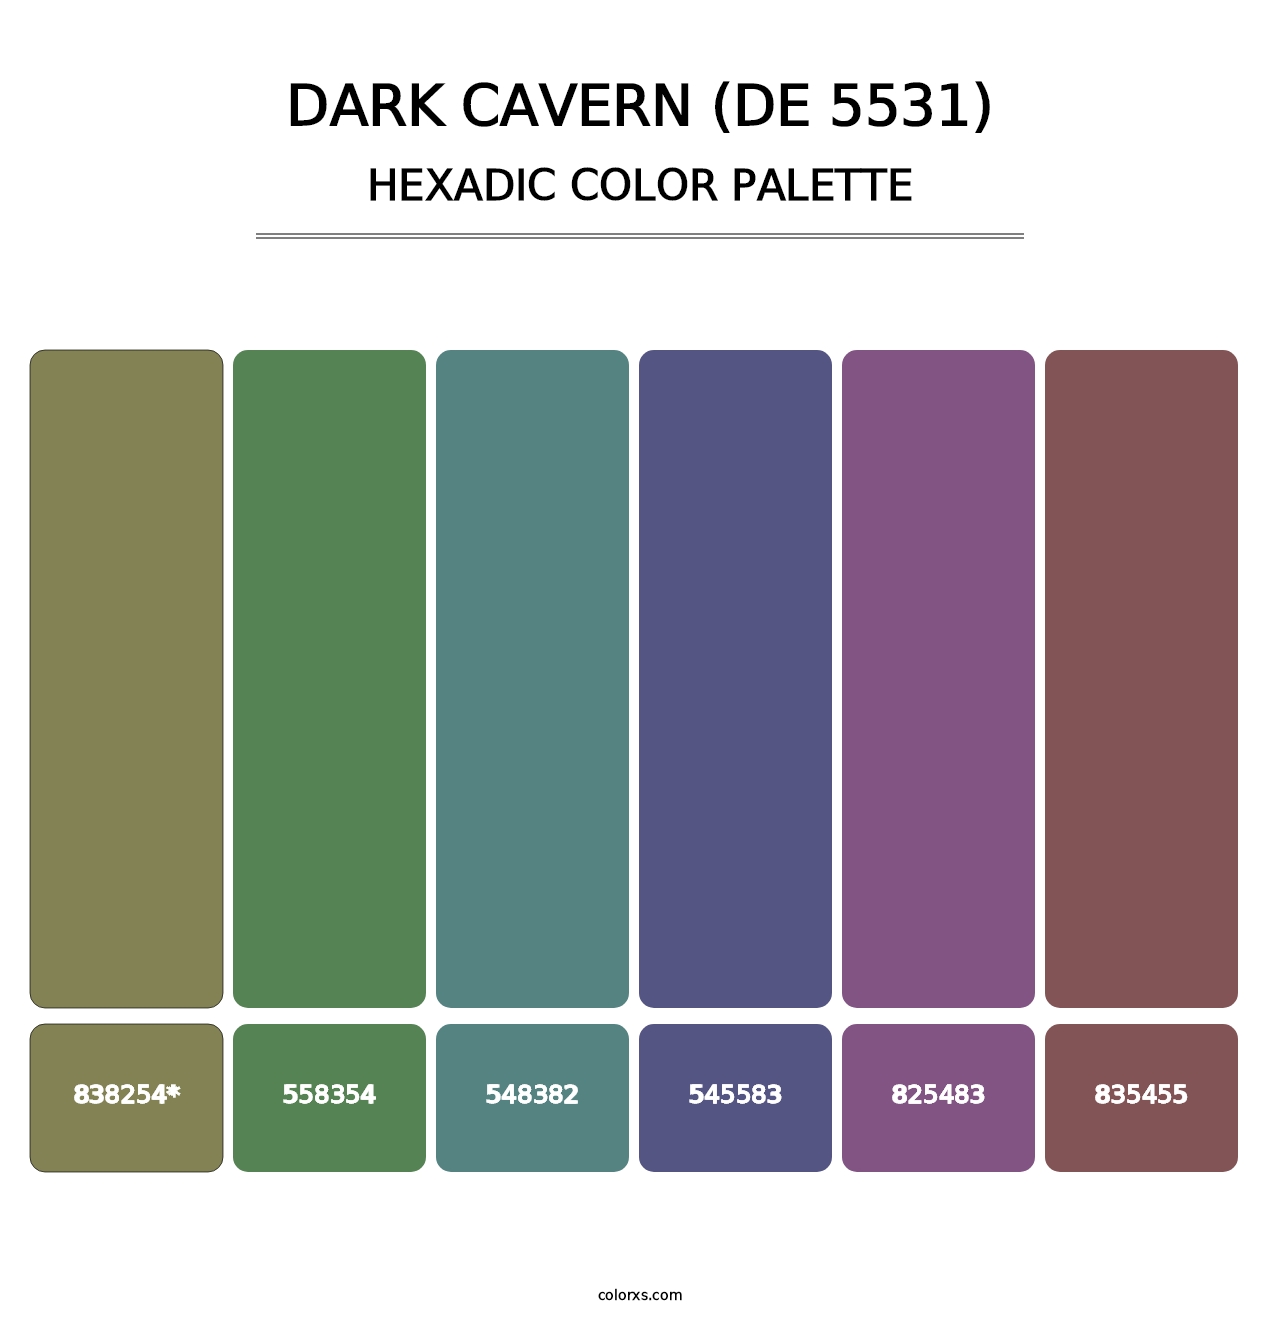 Dark Cavern (DE 5531) - Hexadic Color Palette